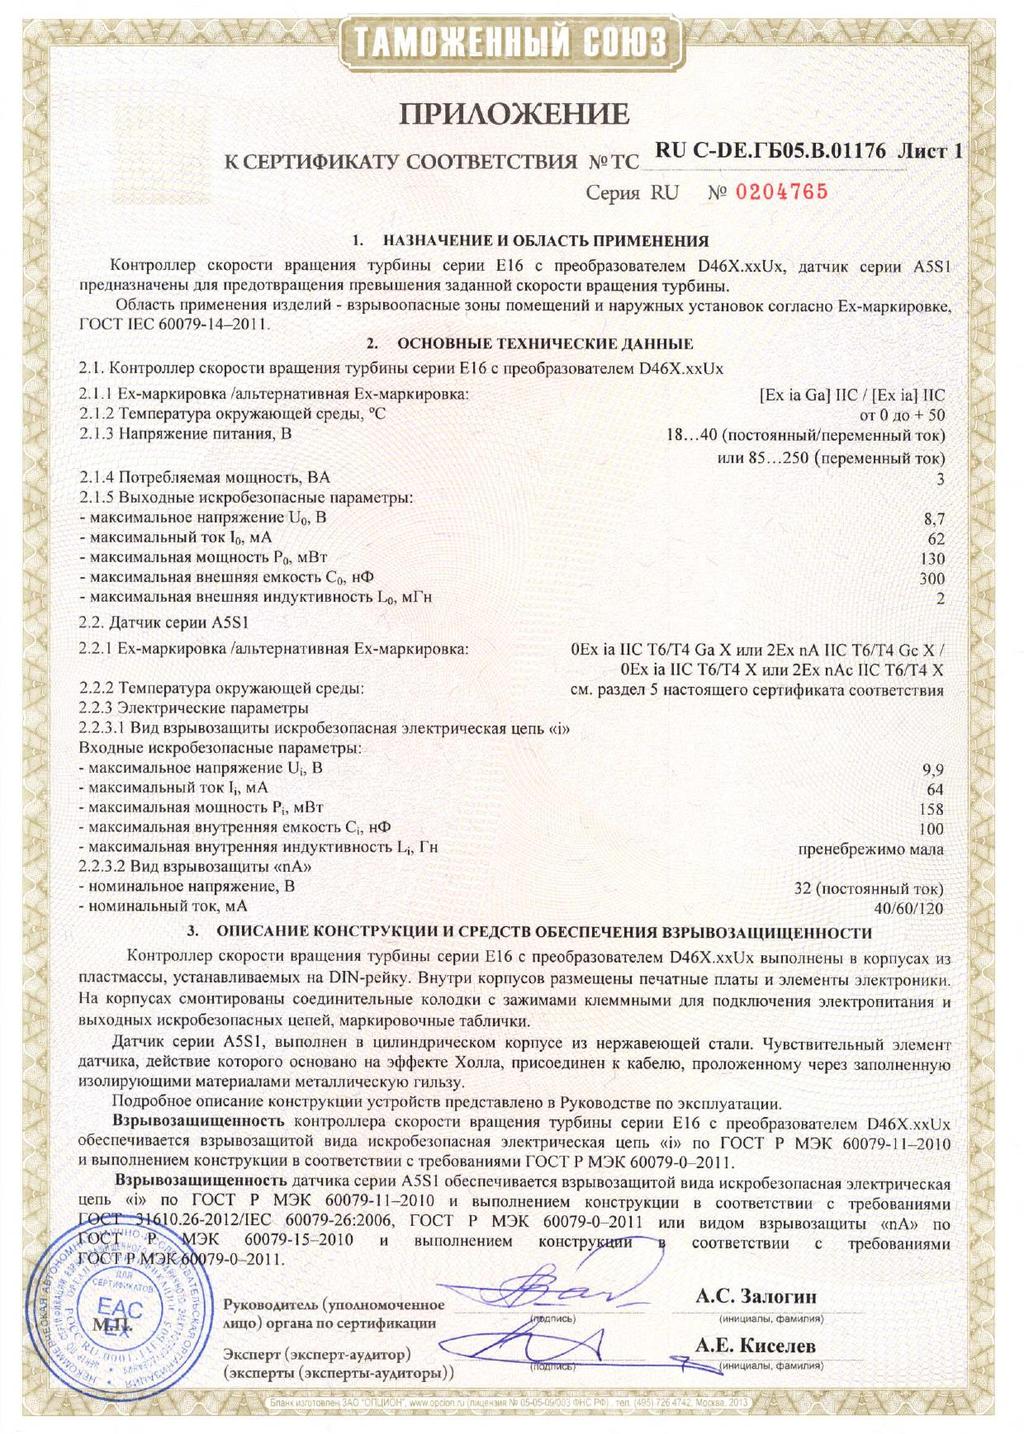 Figure 8: EAC TR CU Certificate part 2